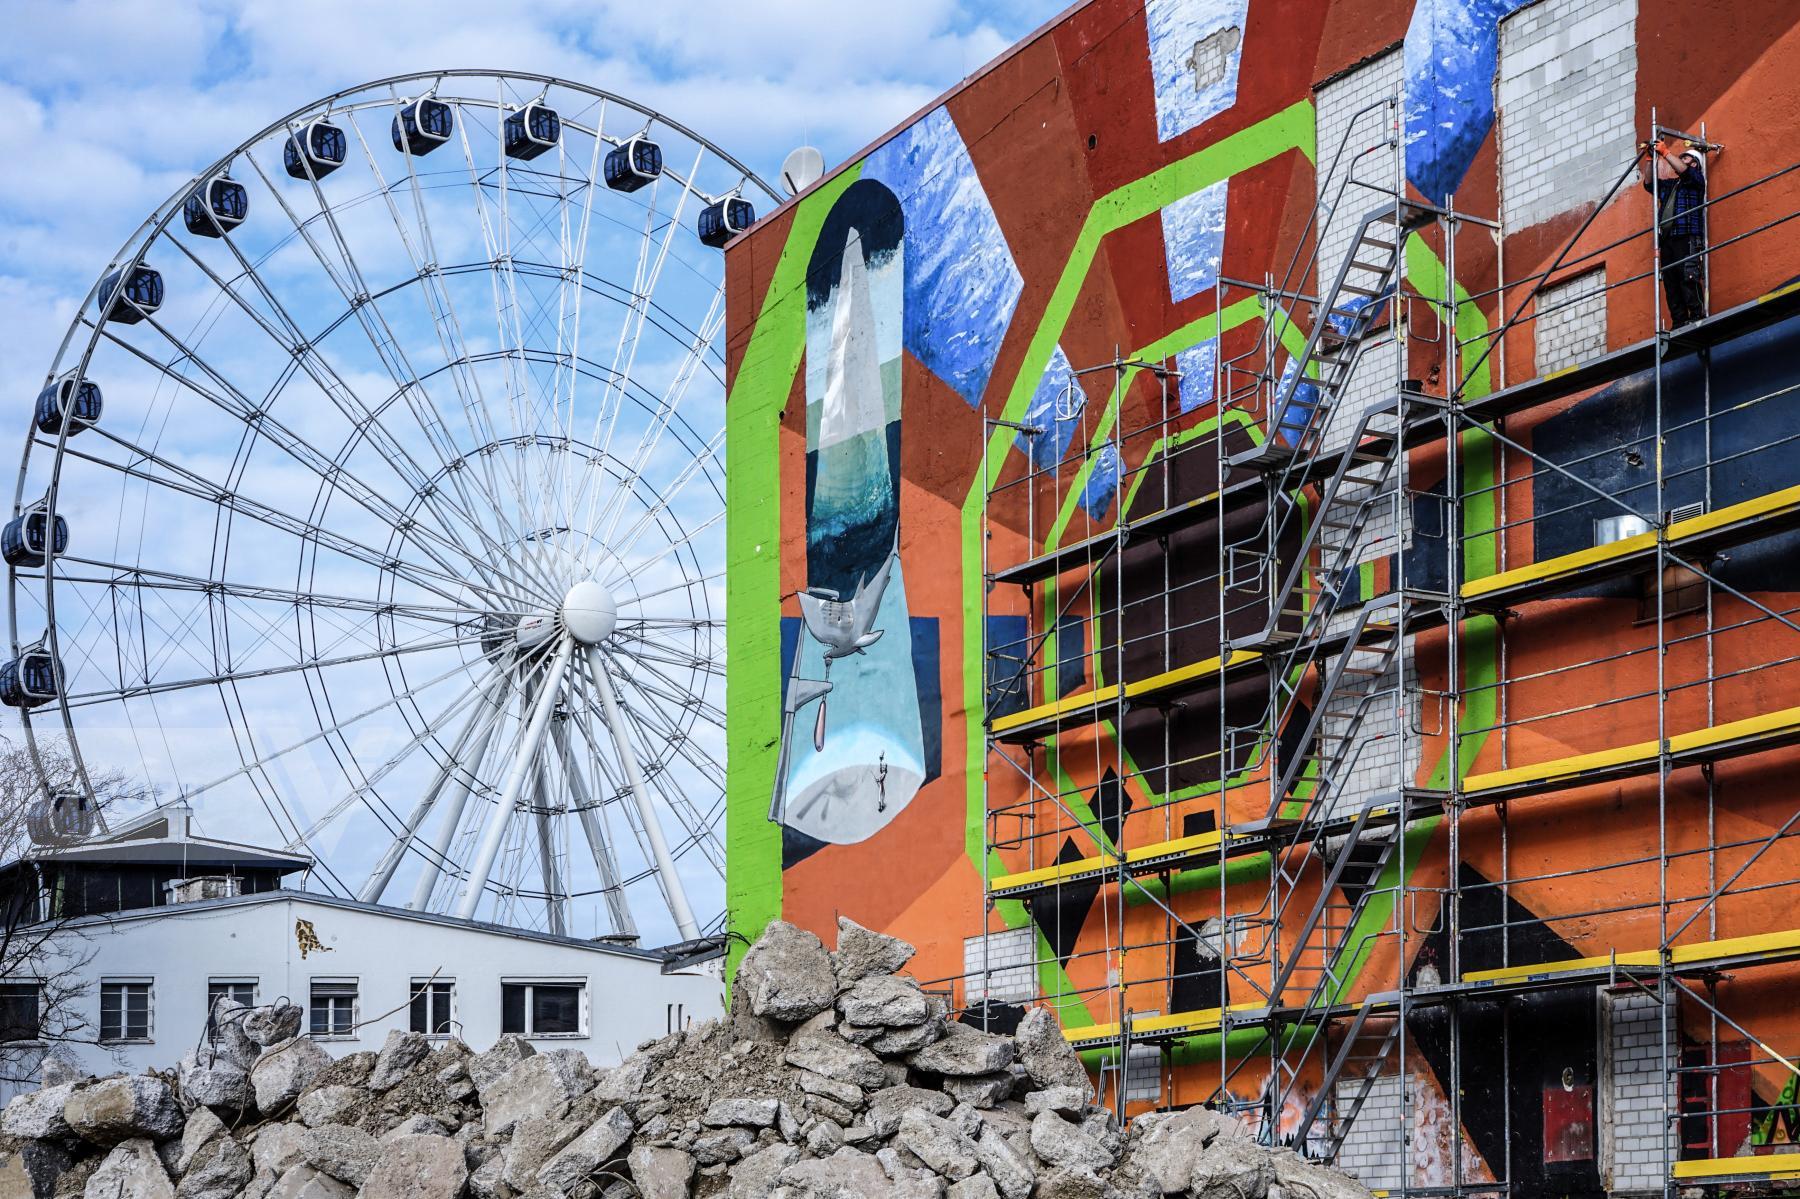 Purchase Werksviertel Munich - An exciting urban development project with ephemeral street art by Michael Nguyen